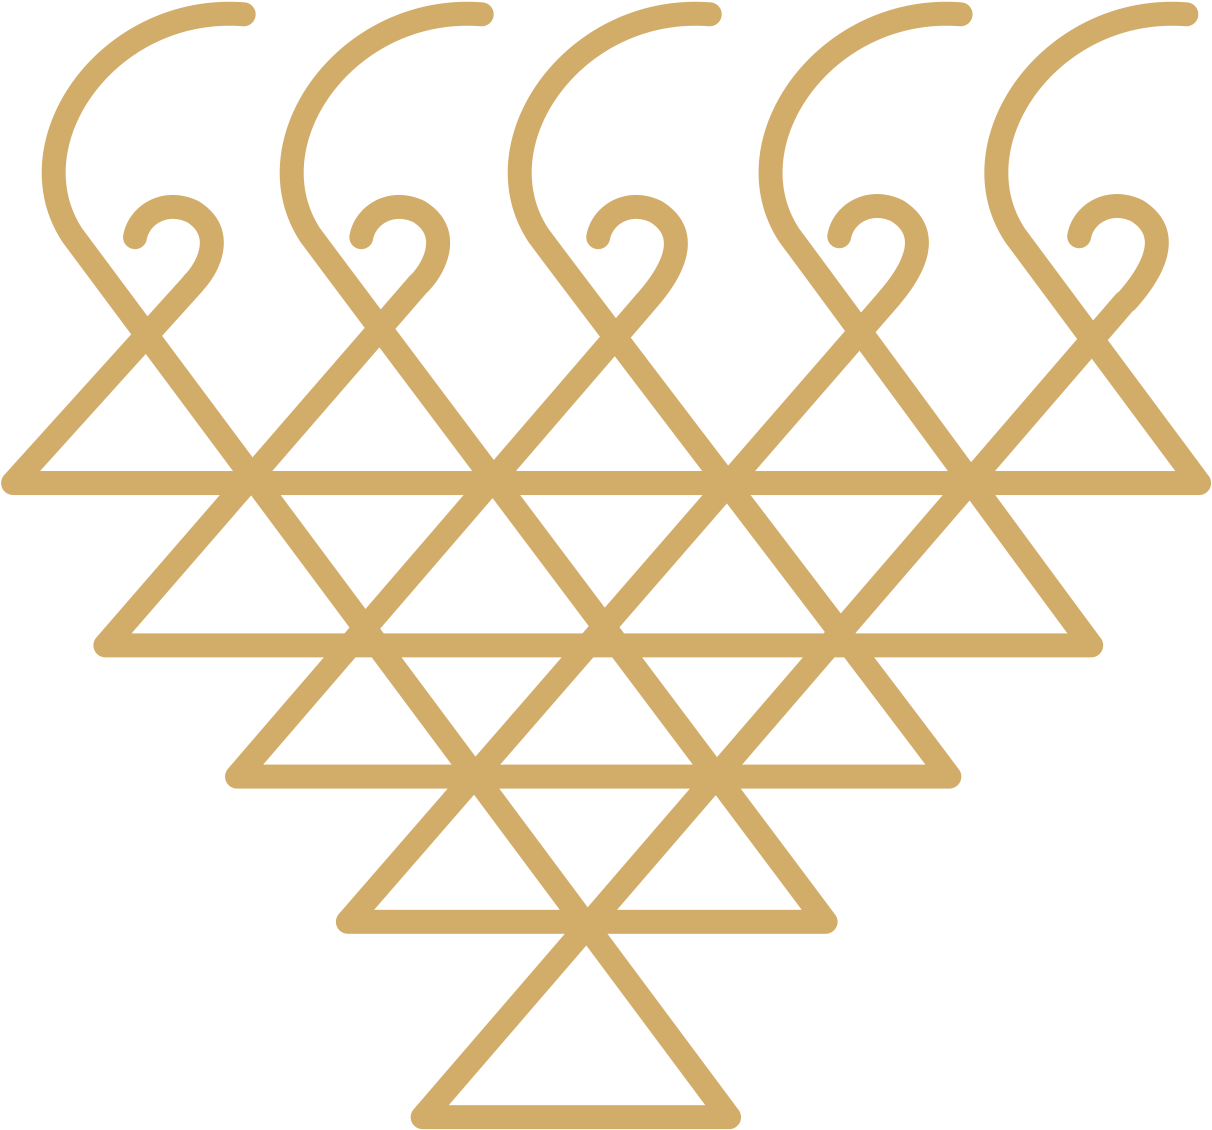 symbol, religion, banner png images background